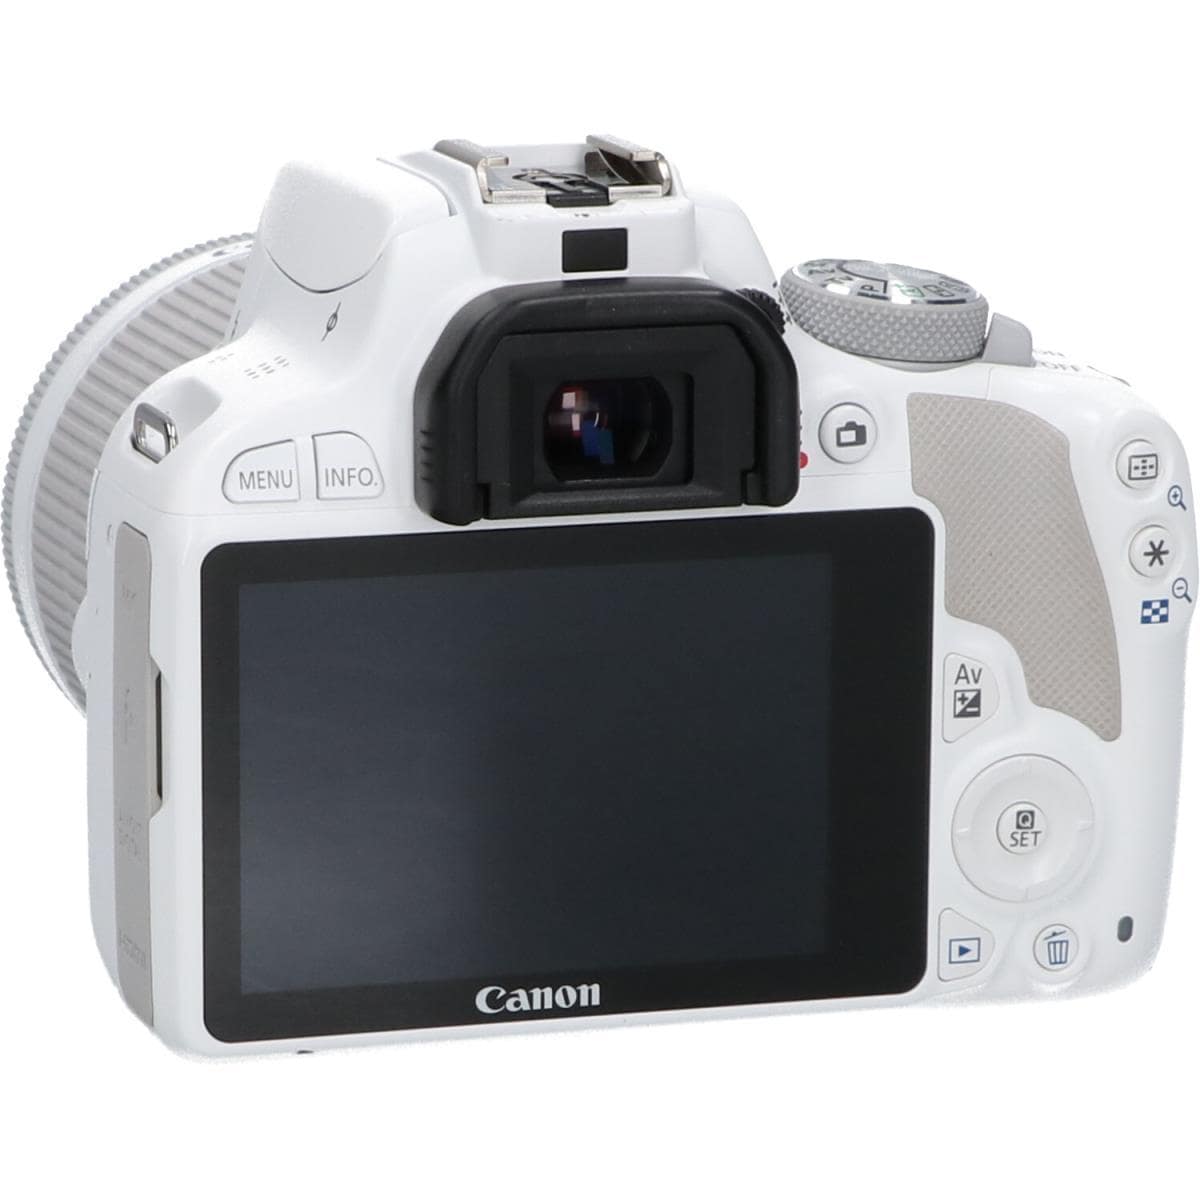 Canon EOS Kiss x7White キャノン一眼レフカメラ白モデル - デジタルカメラ